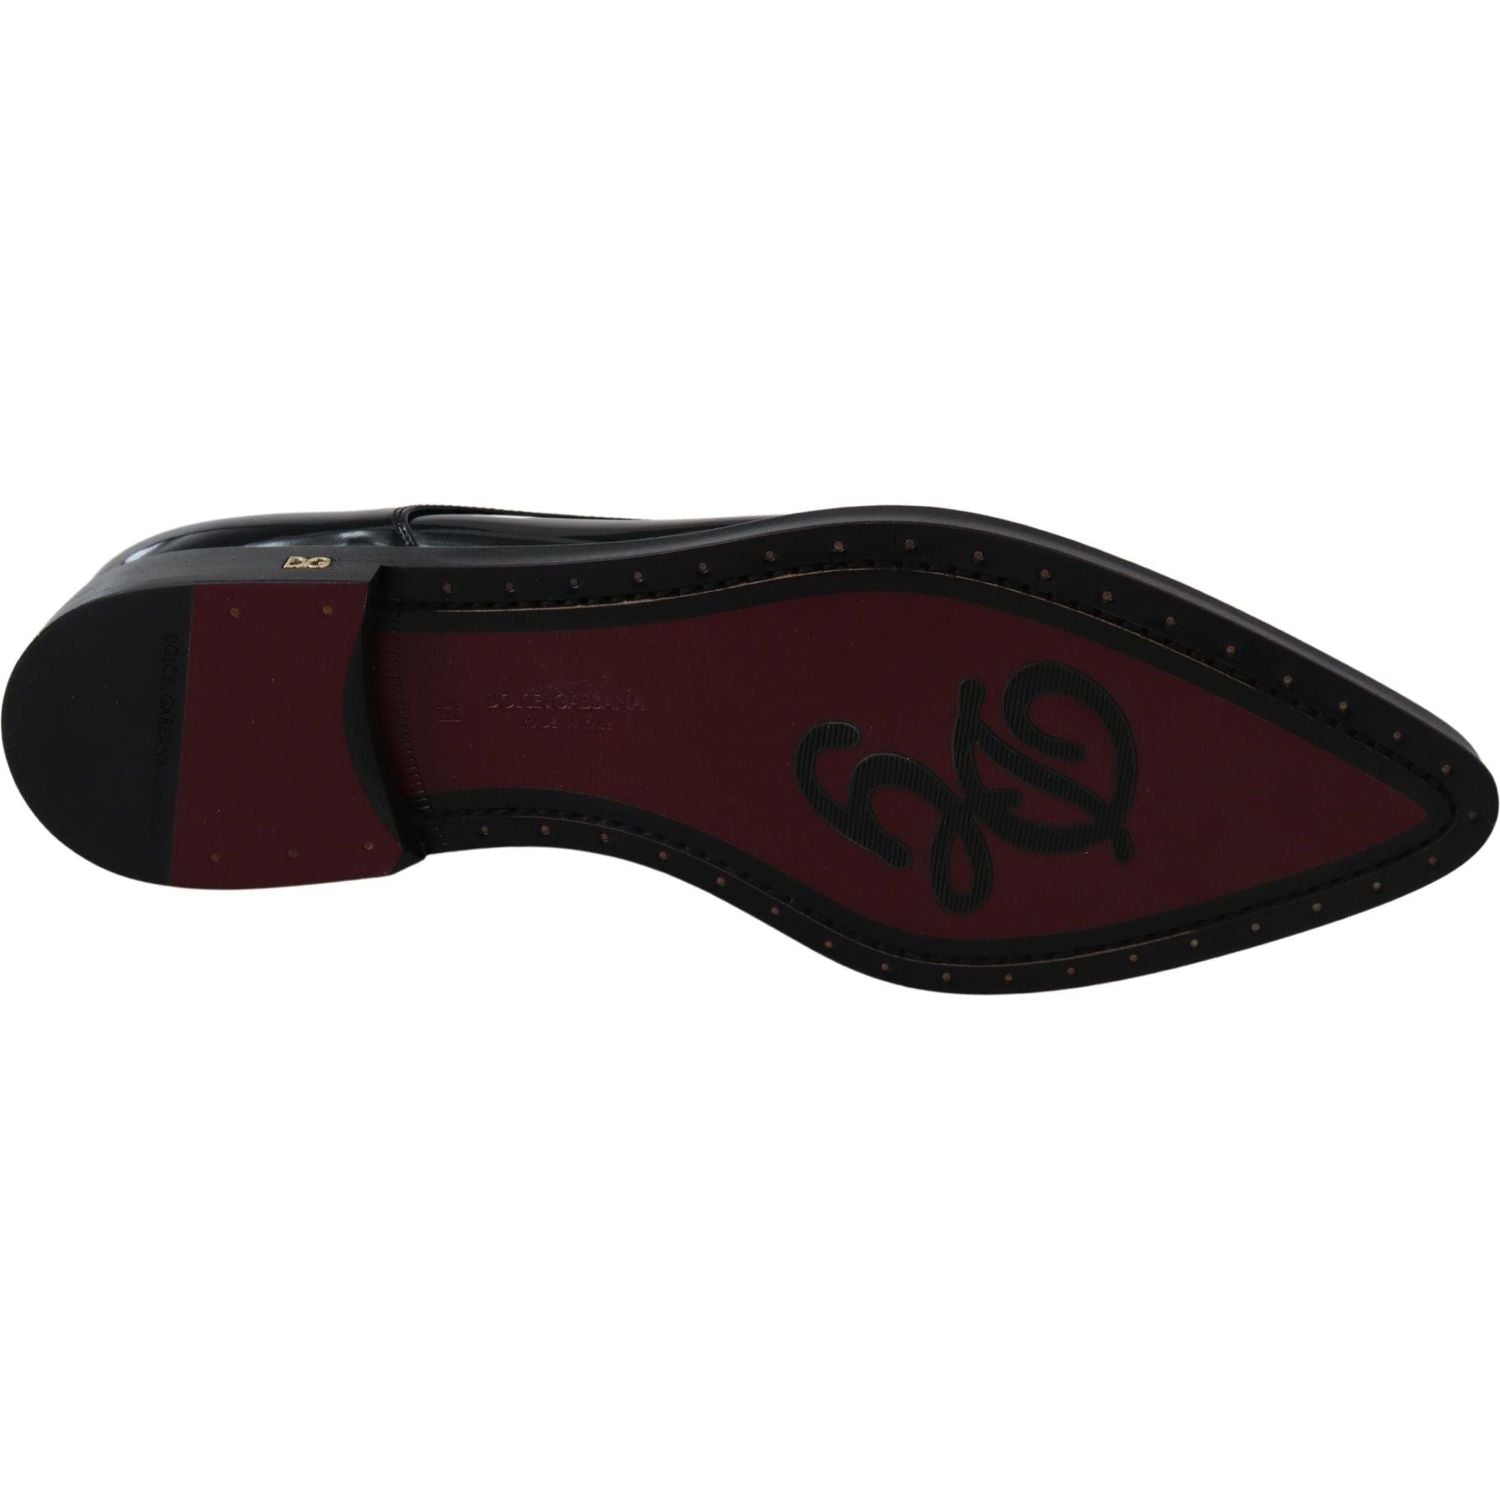 Dolce & Gabbana | Black Leather Crystal Lace Up Formal Shoes | 539.00 - McRichard Designer Brands